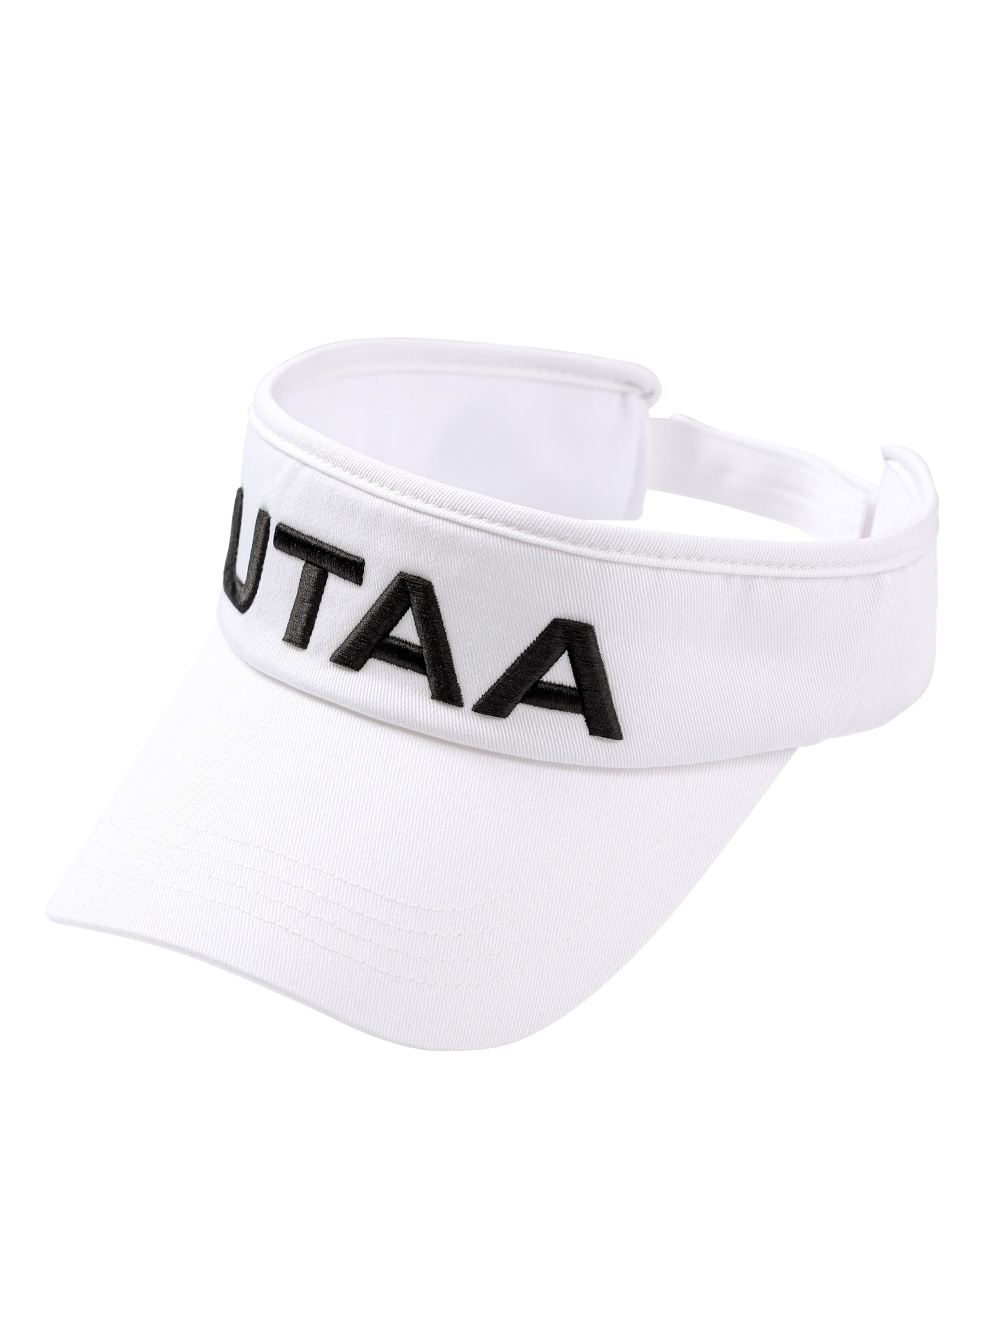 UTAA Basic Logo Visor : White (UB0GCM204WH)